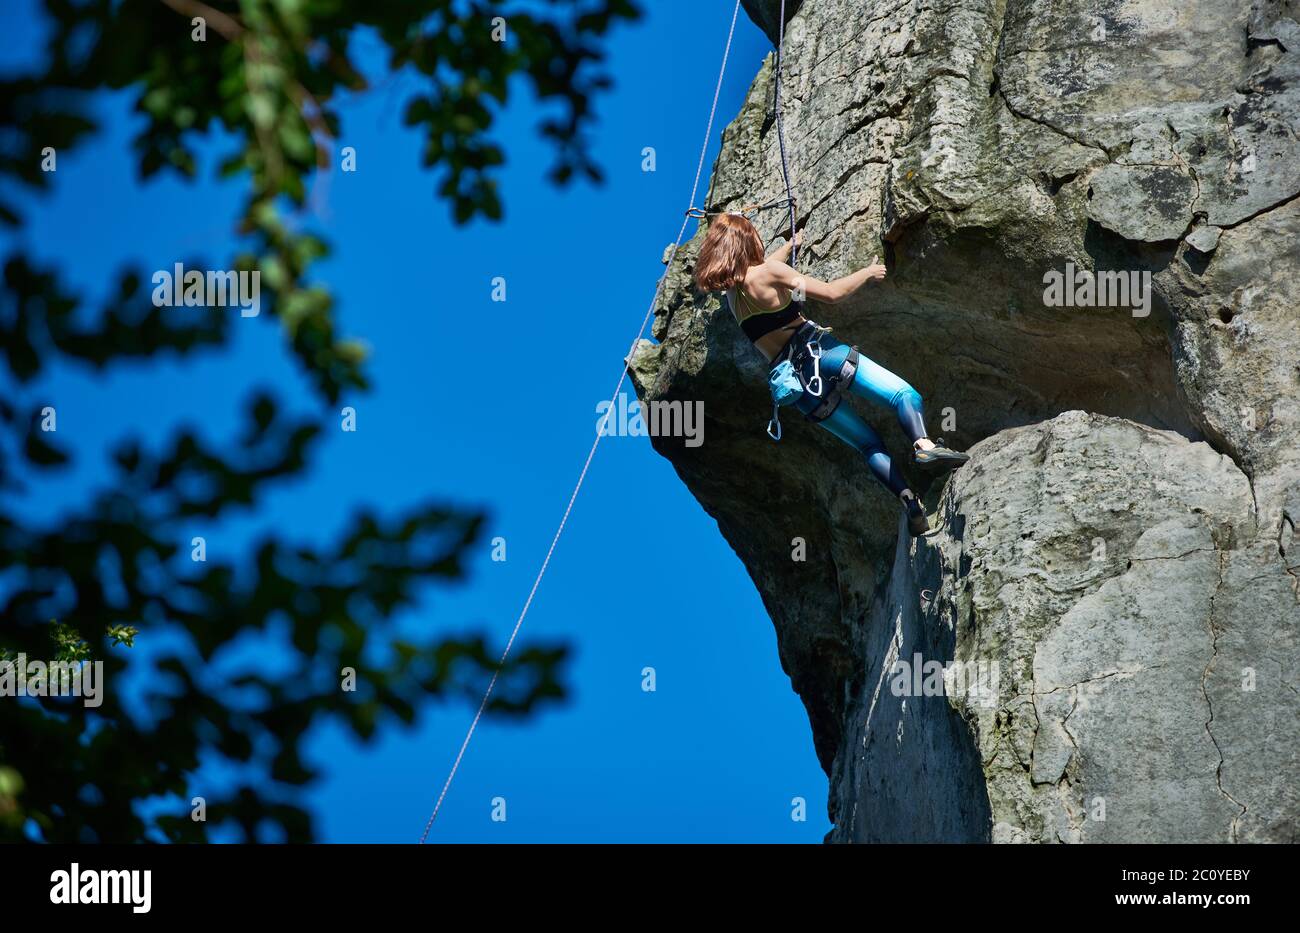 Tapfere Dame Alpinist in Sportbekleidung Klettern extrem vertikalen Felsen  unter schönen blauen Himmel. Frau Bergsteigerin, die hohen Berg aufsteigt  und versucht, den Gipfel zu erreichen. Konzept des Extremsports  Stockfotografie - Alamy